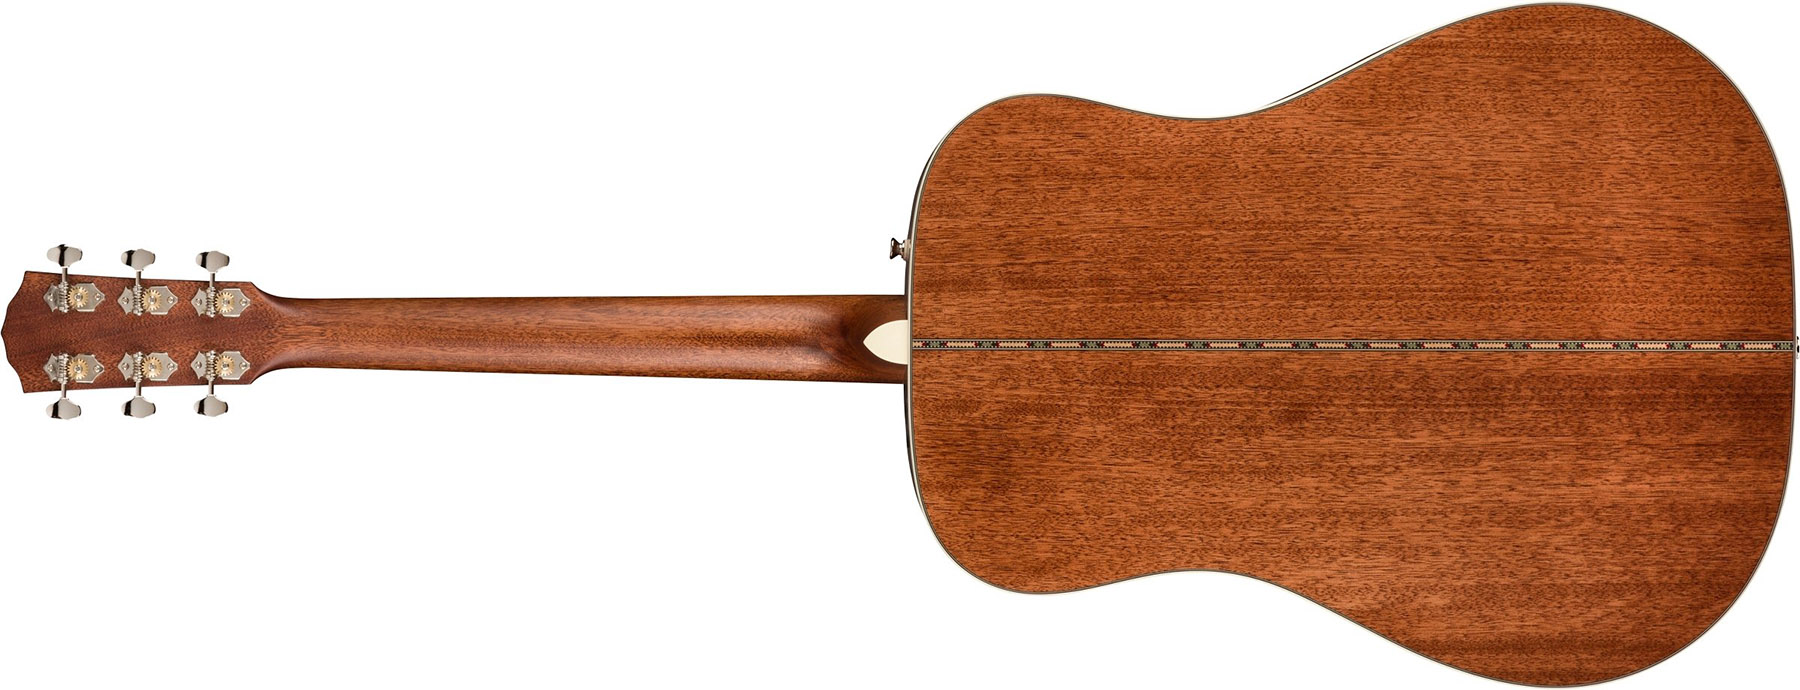 Fender PD-220E Dreadnought Acoustic